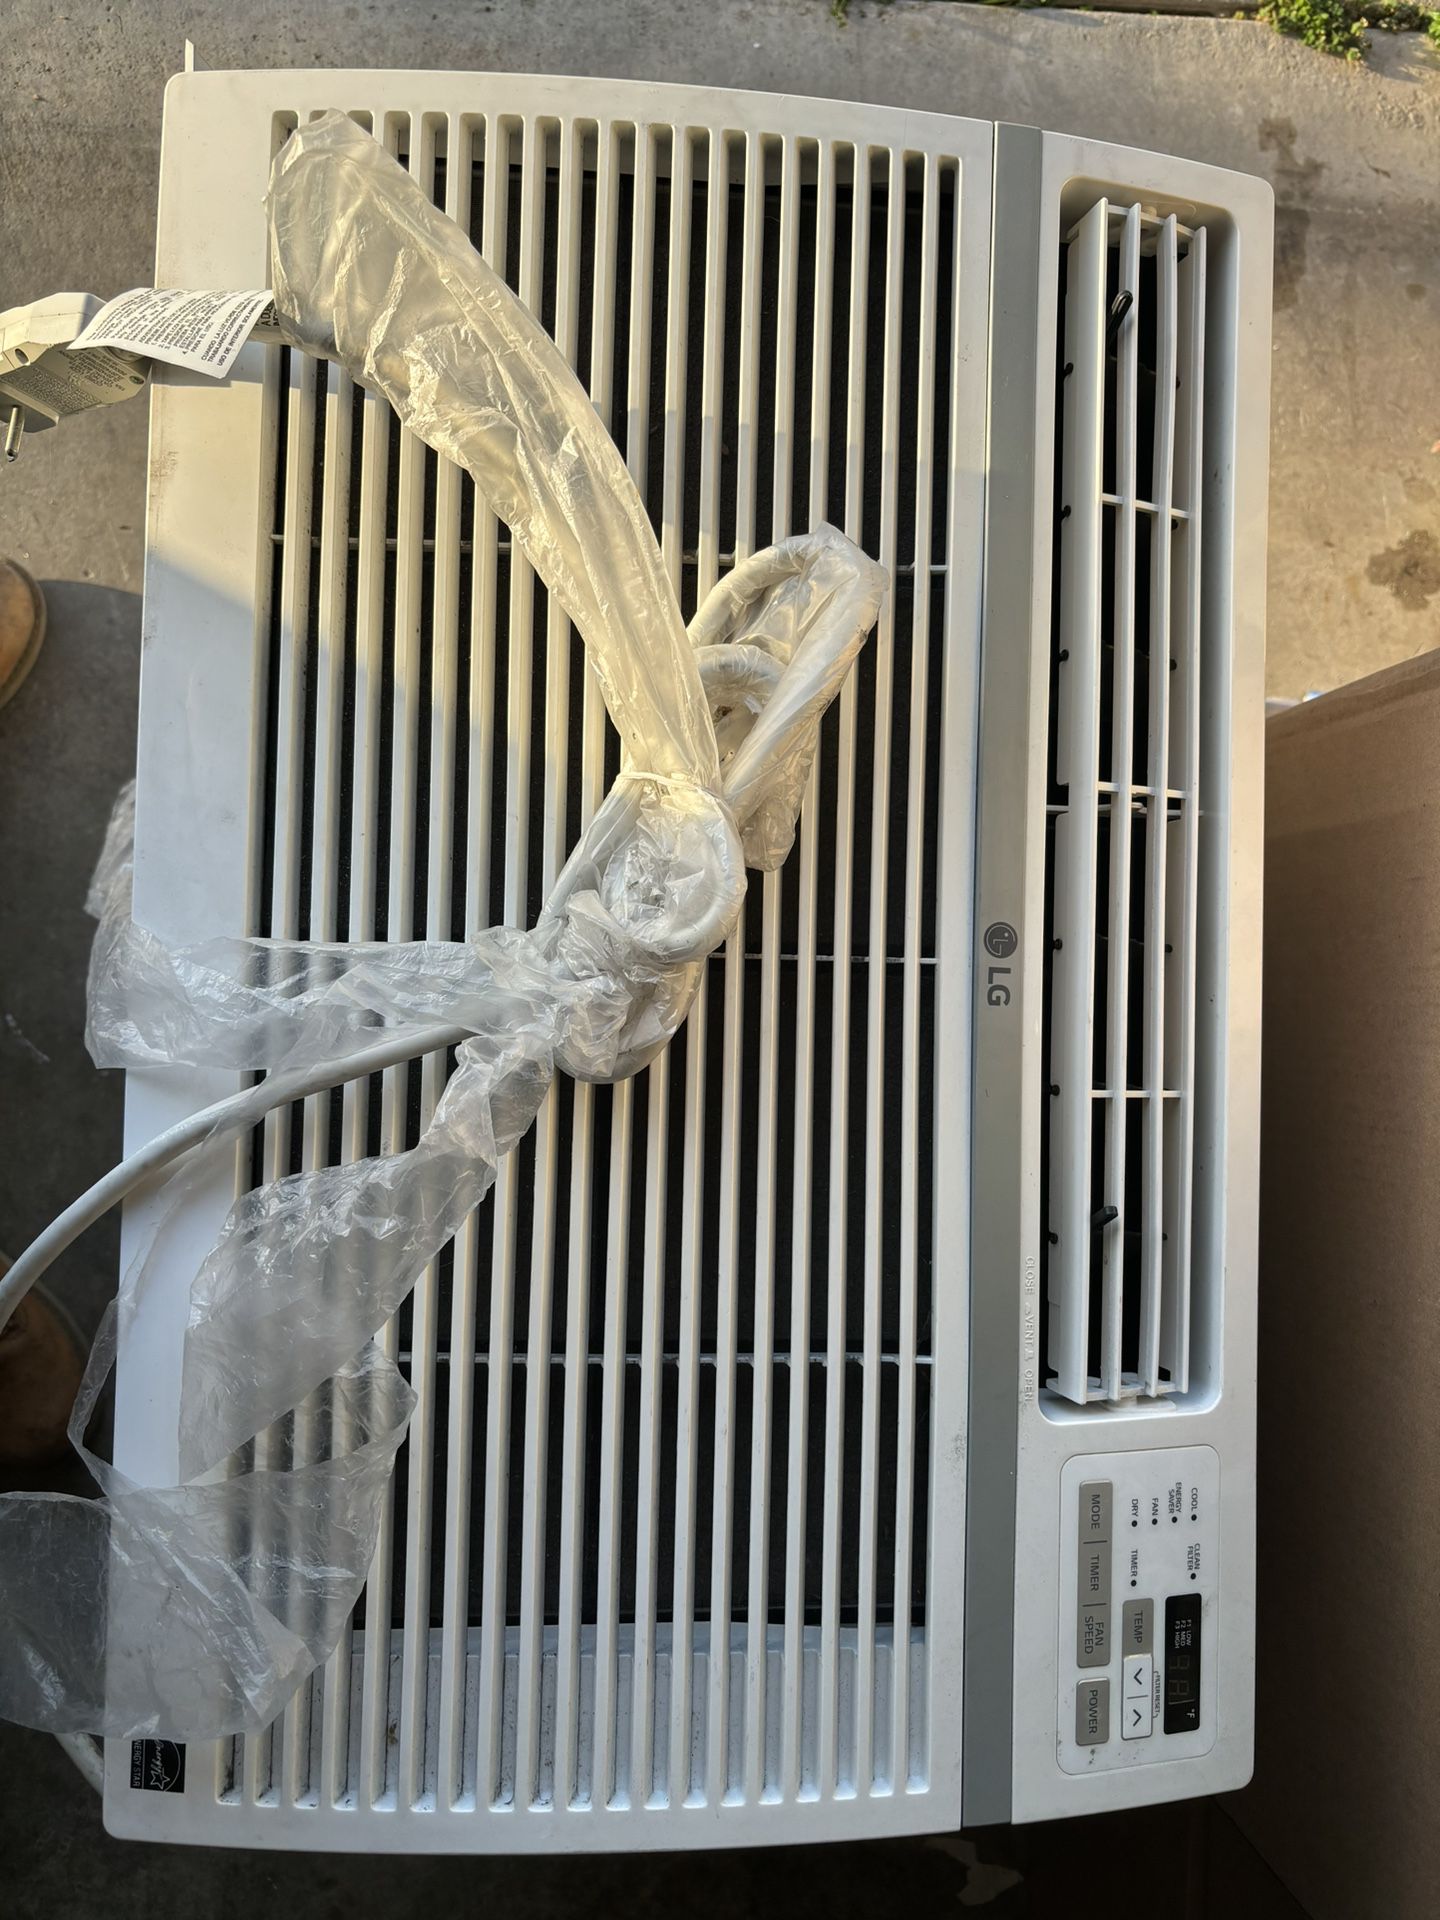 LG Air Conditioner 15,000 BTU